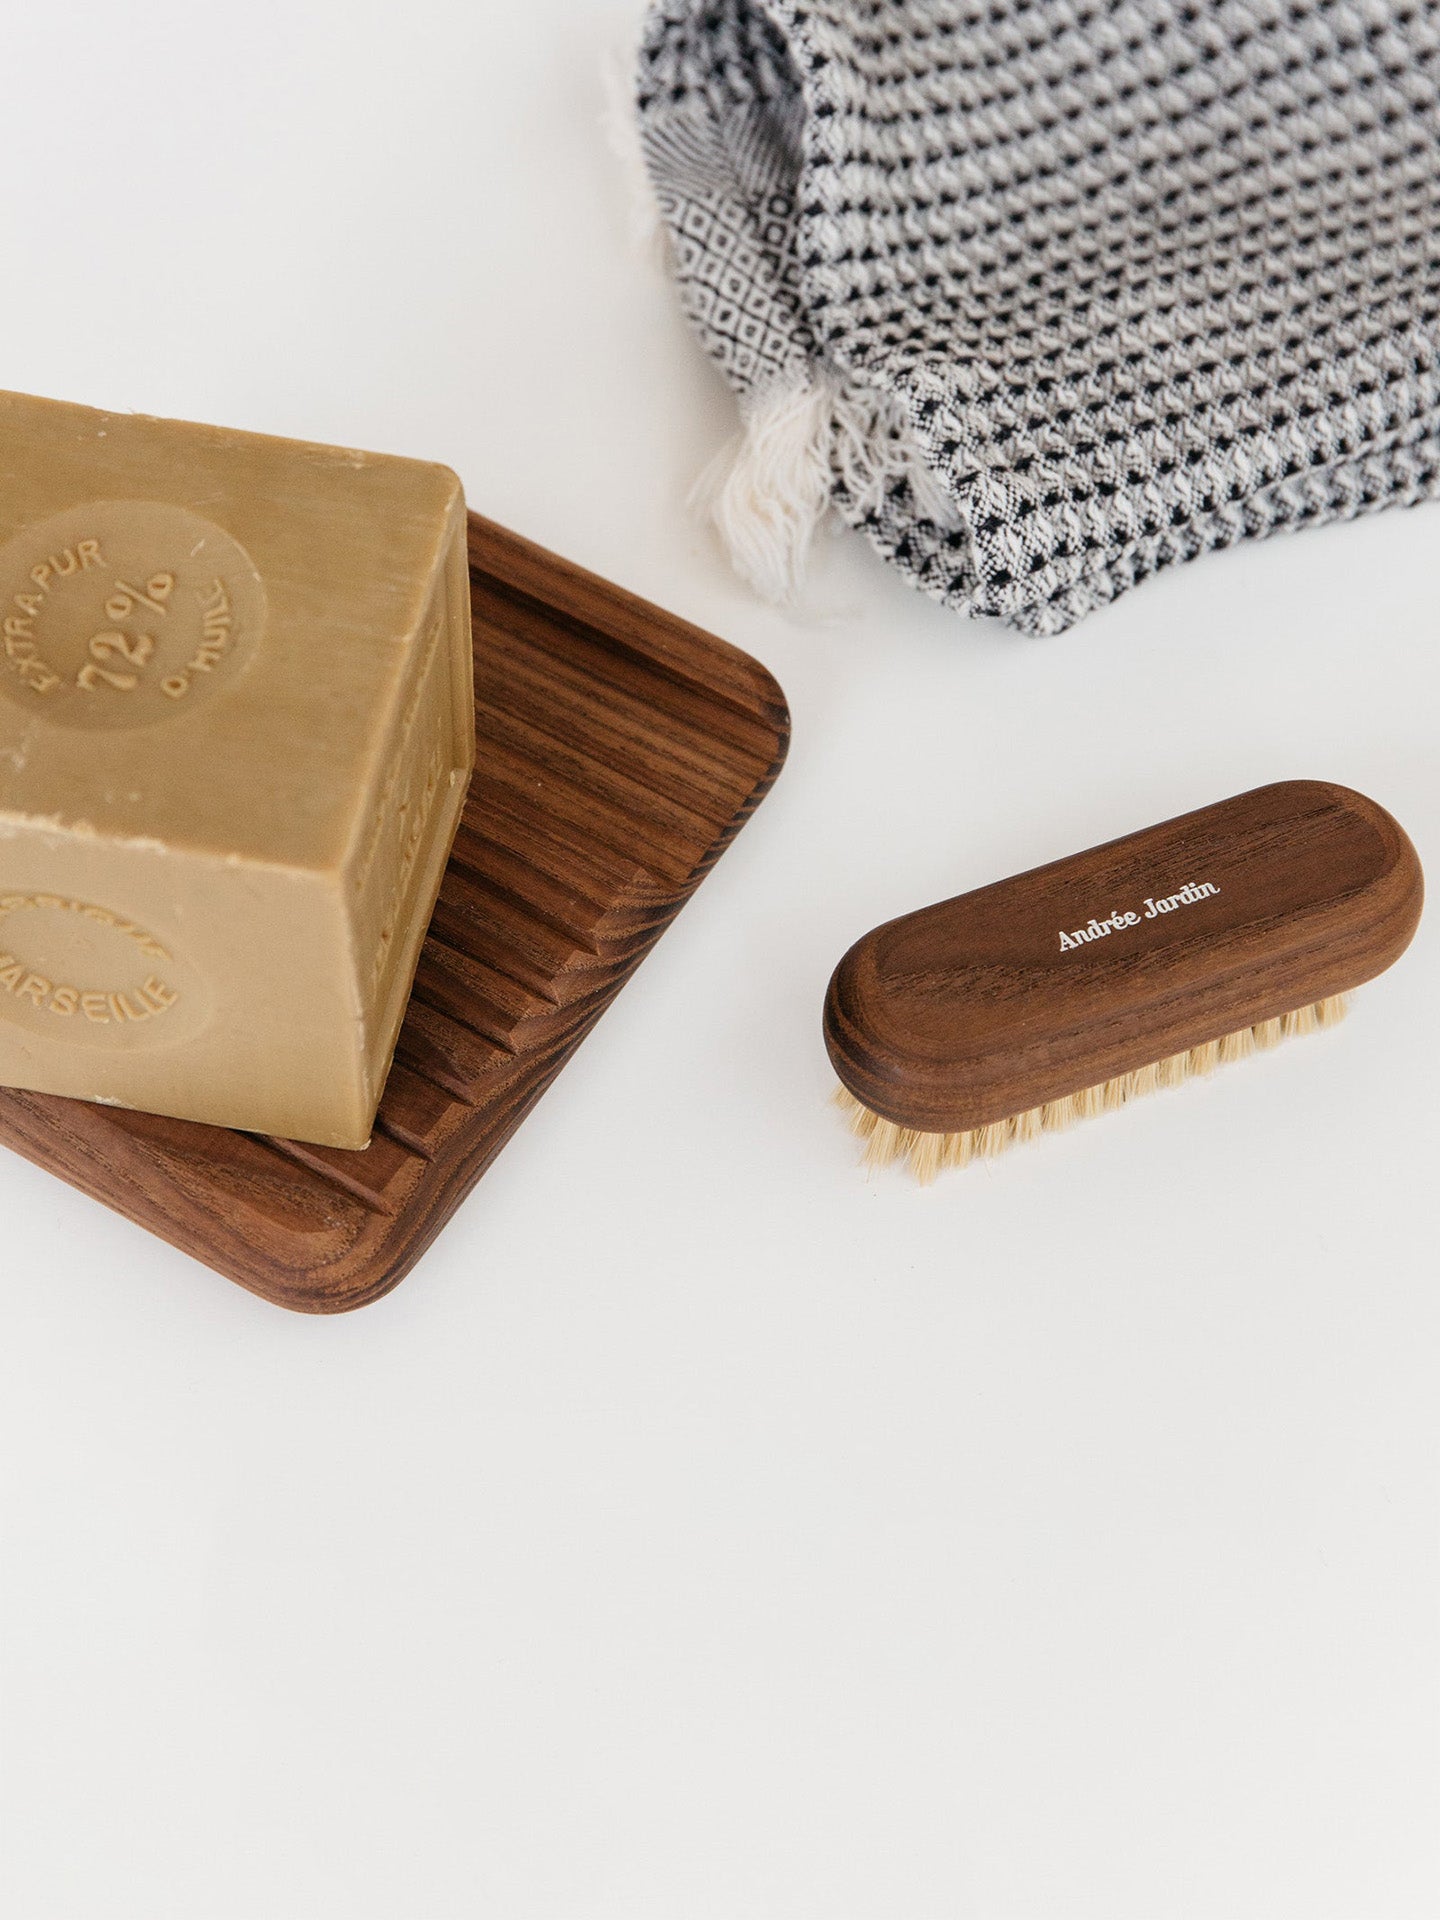 Andrée Jardin gift set, dark wood & olive oil soap